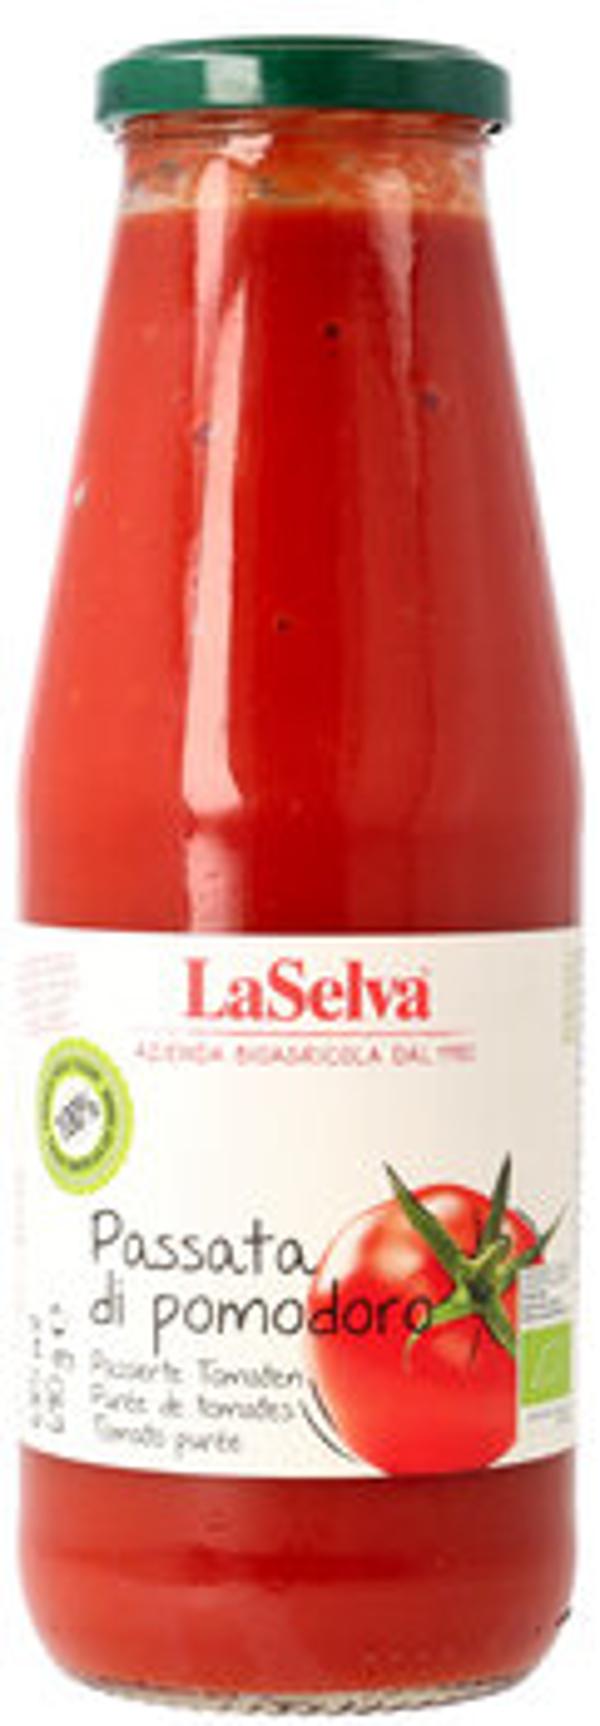 Produktfoto zu Tomaten Passata La Selva 690 g